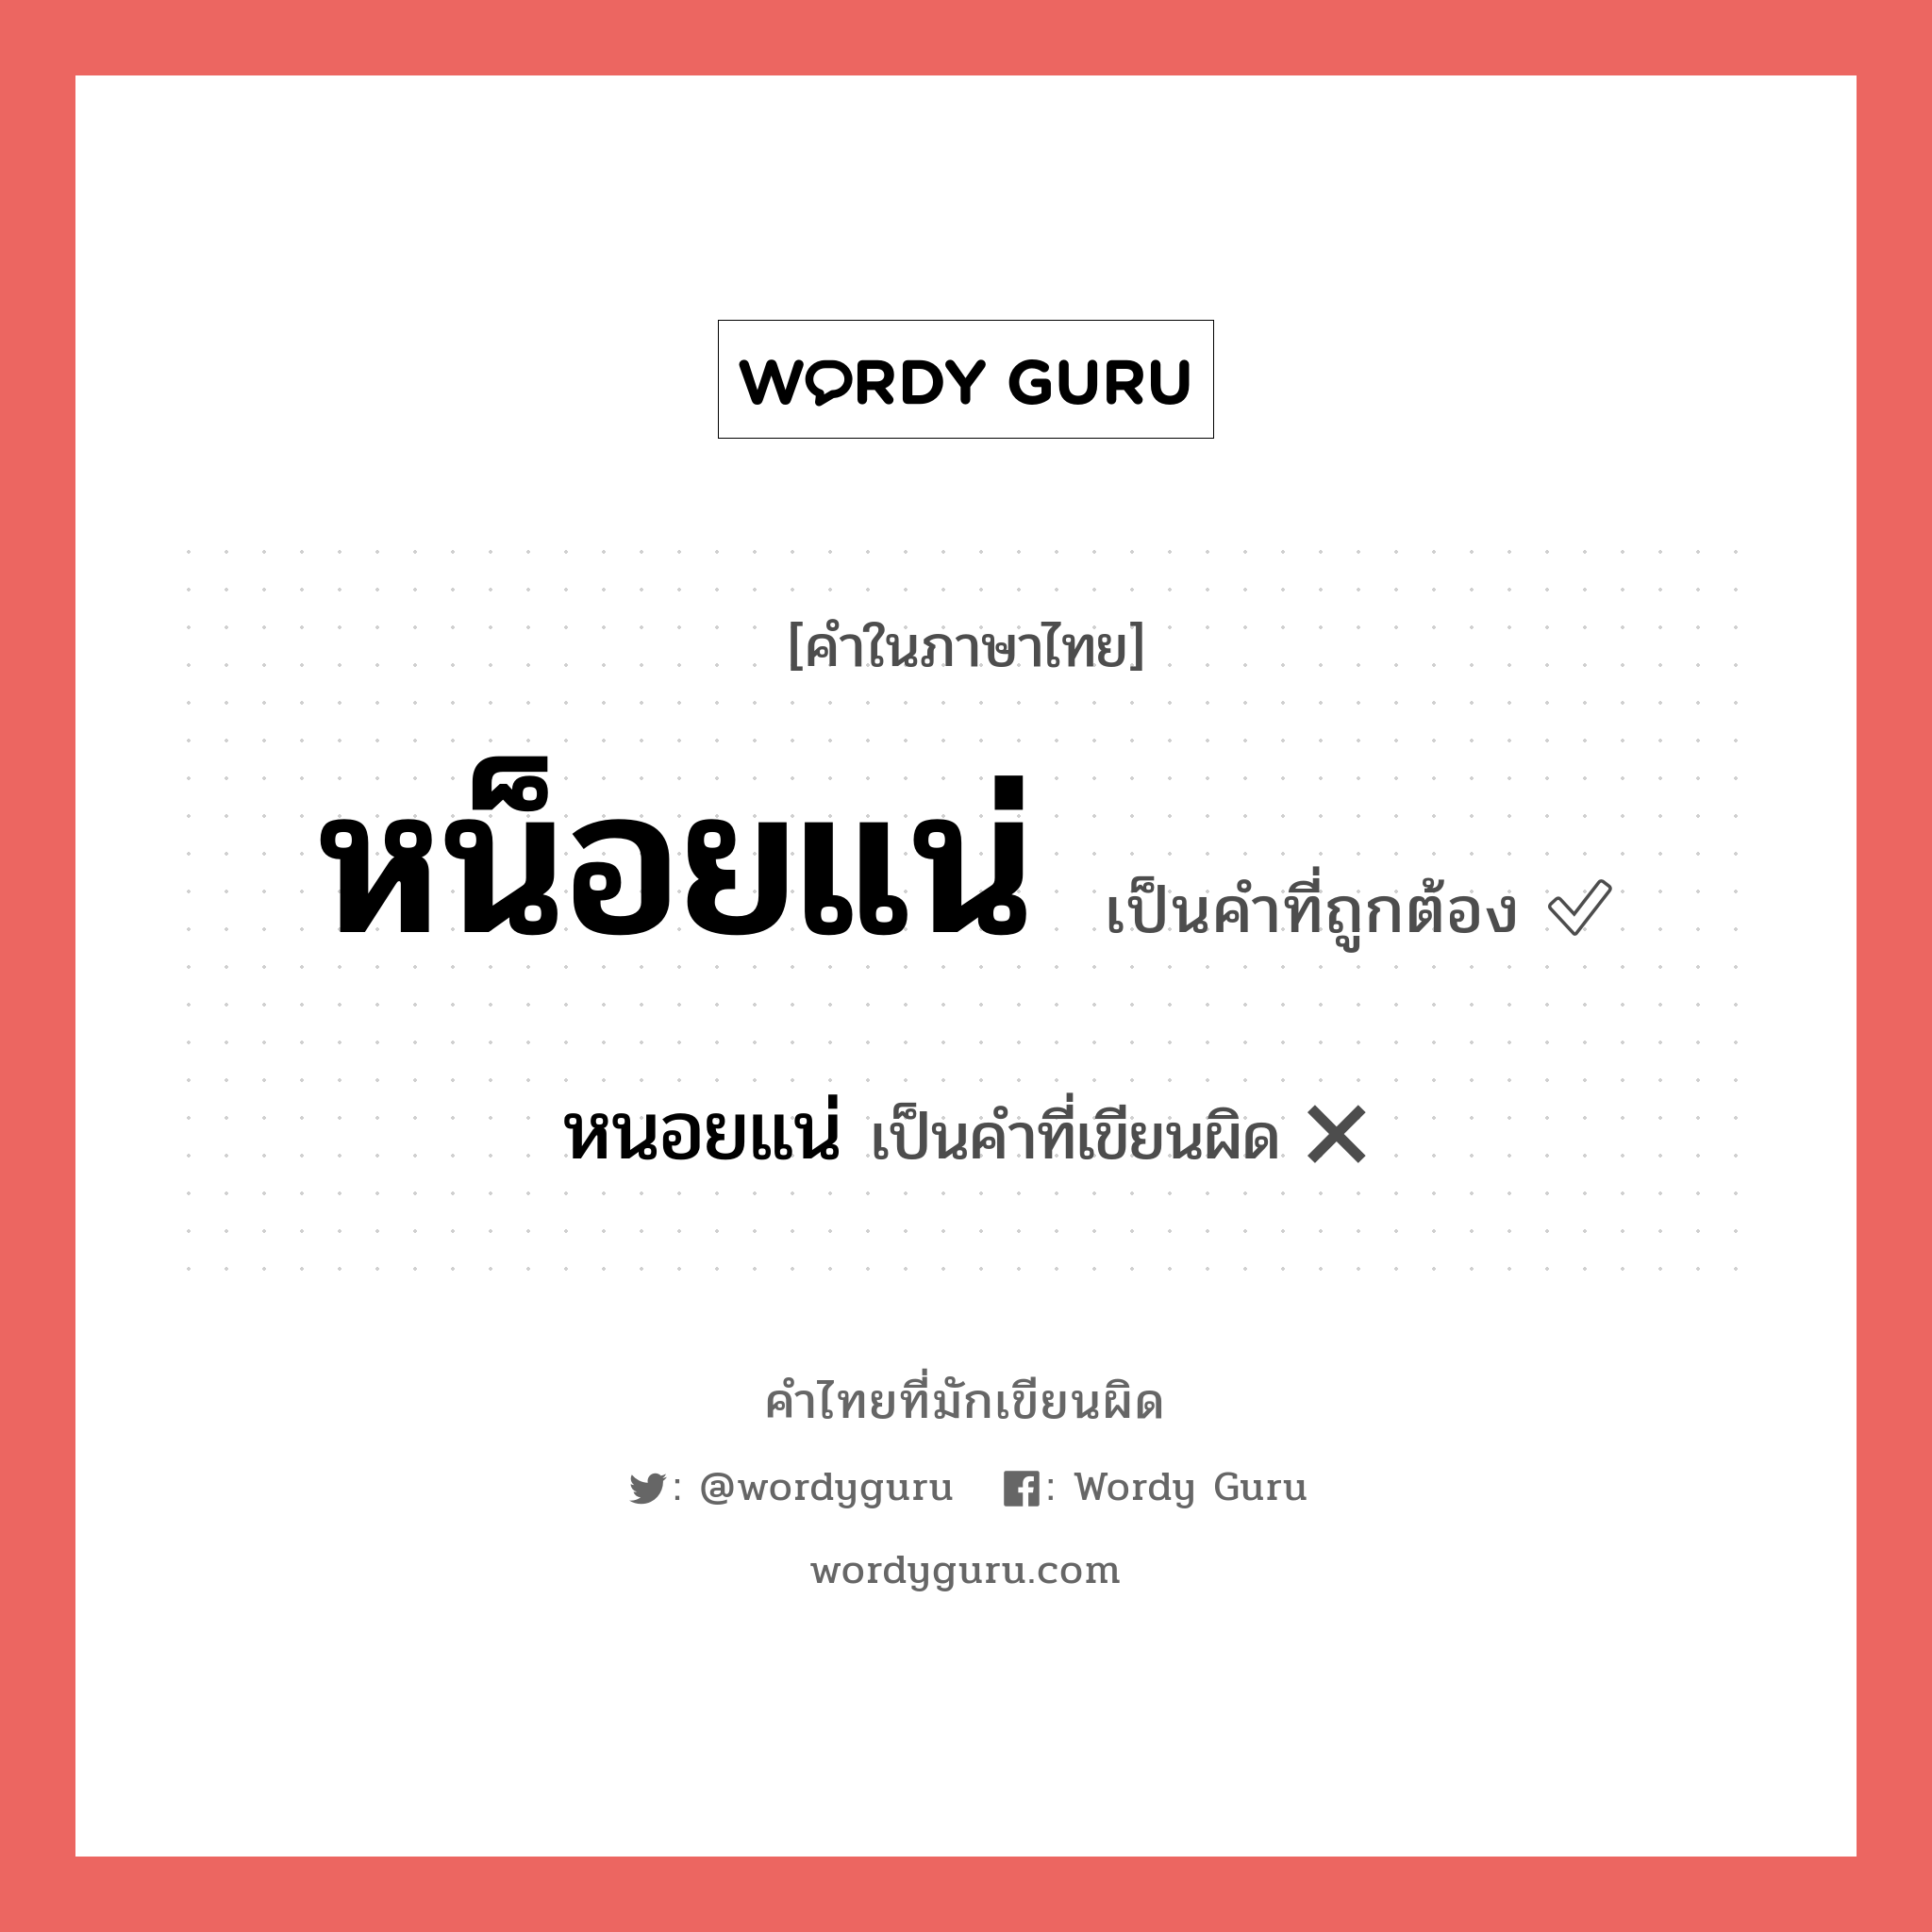 หน็อยแน่ หรือ หนอยแน่ คำไหนเขียนถูก?, คำในภาษาไทยที่มักเขียนผิด หน็อยแน่ คำที่ผิด ❌ หนอยแน่